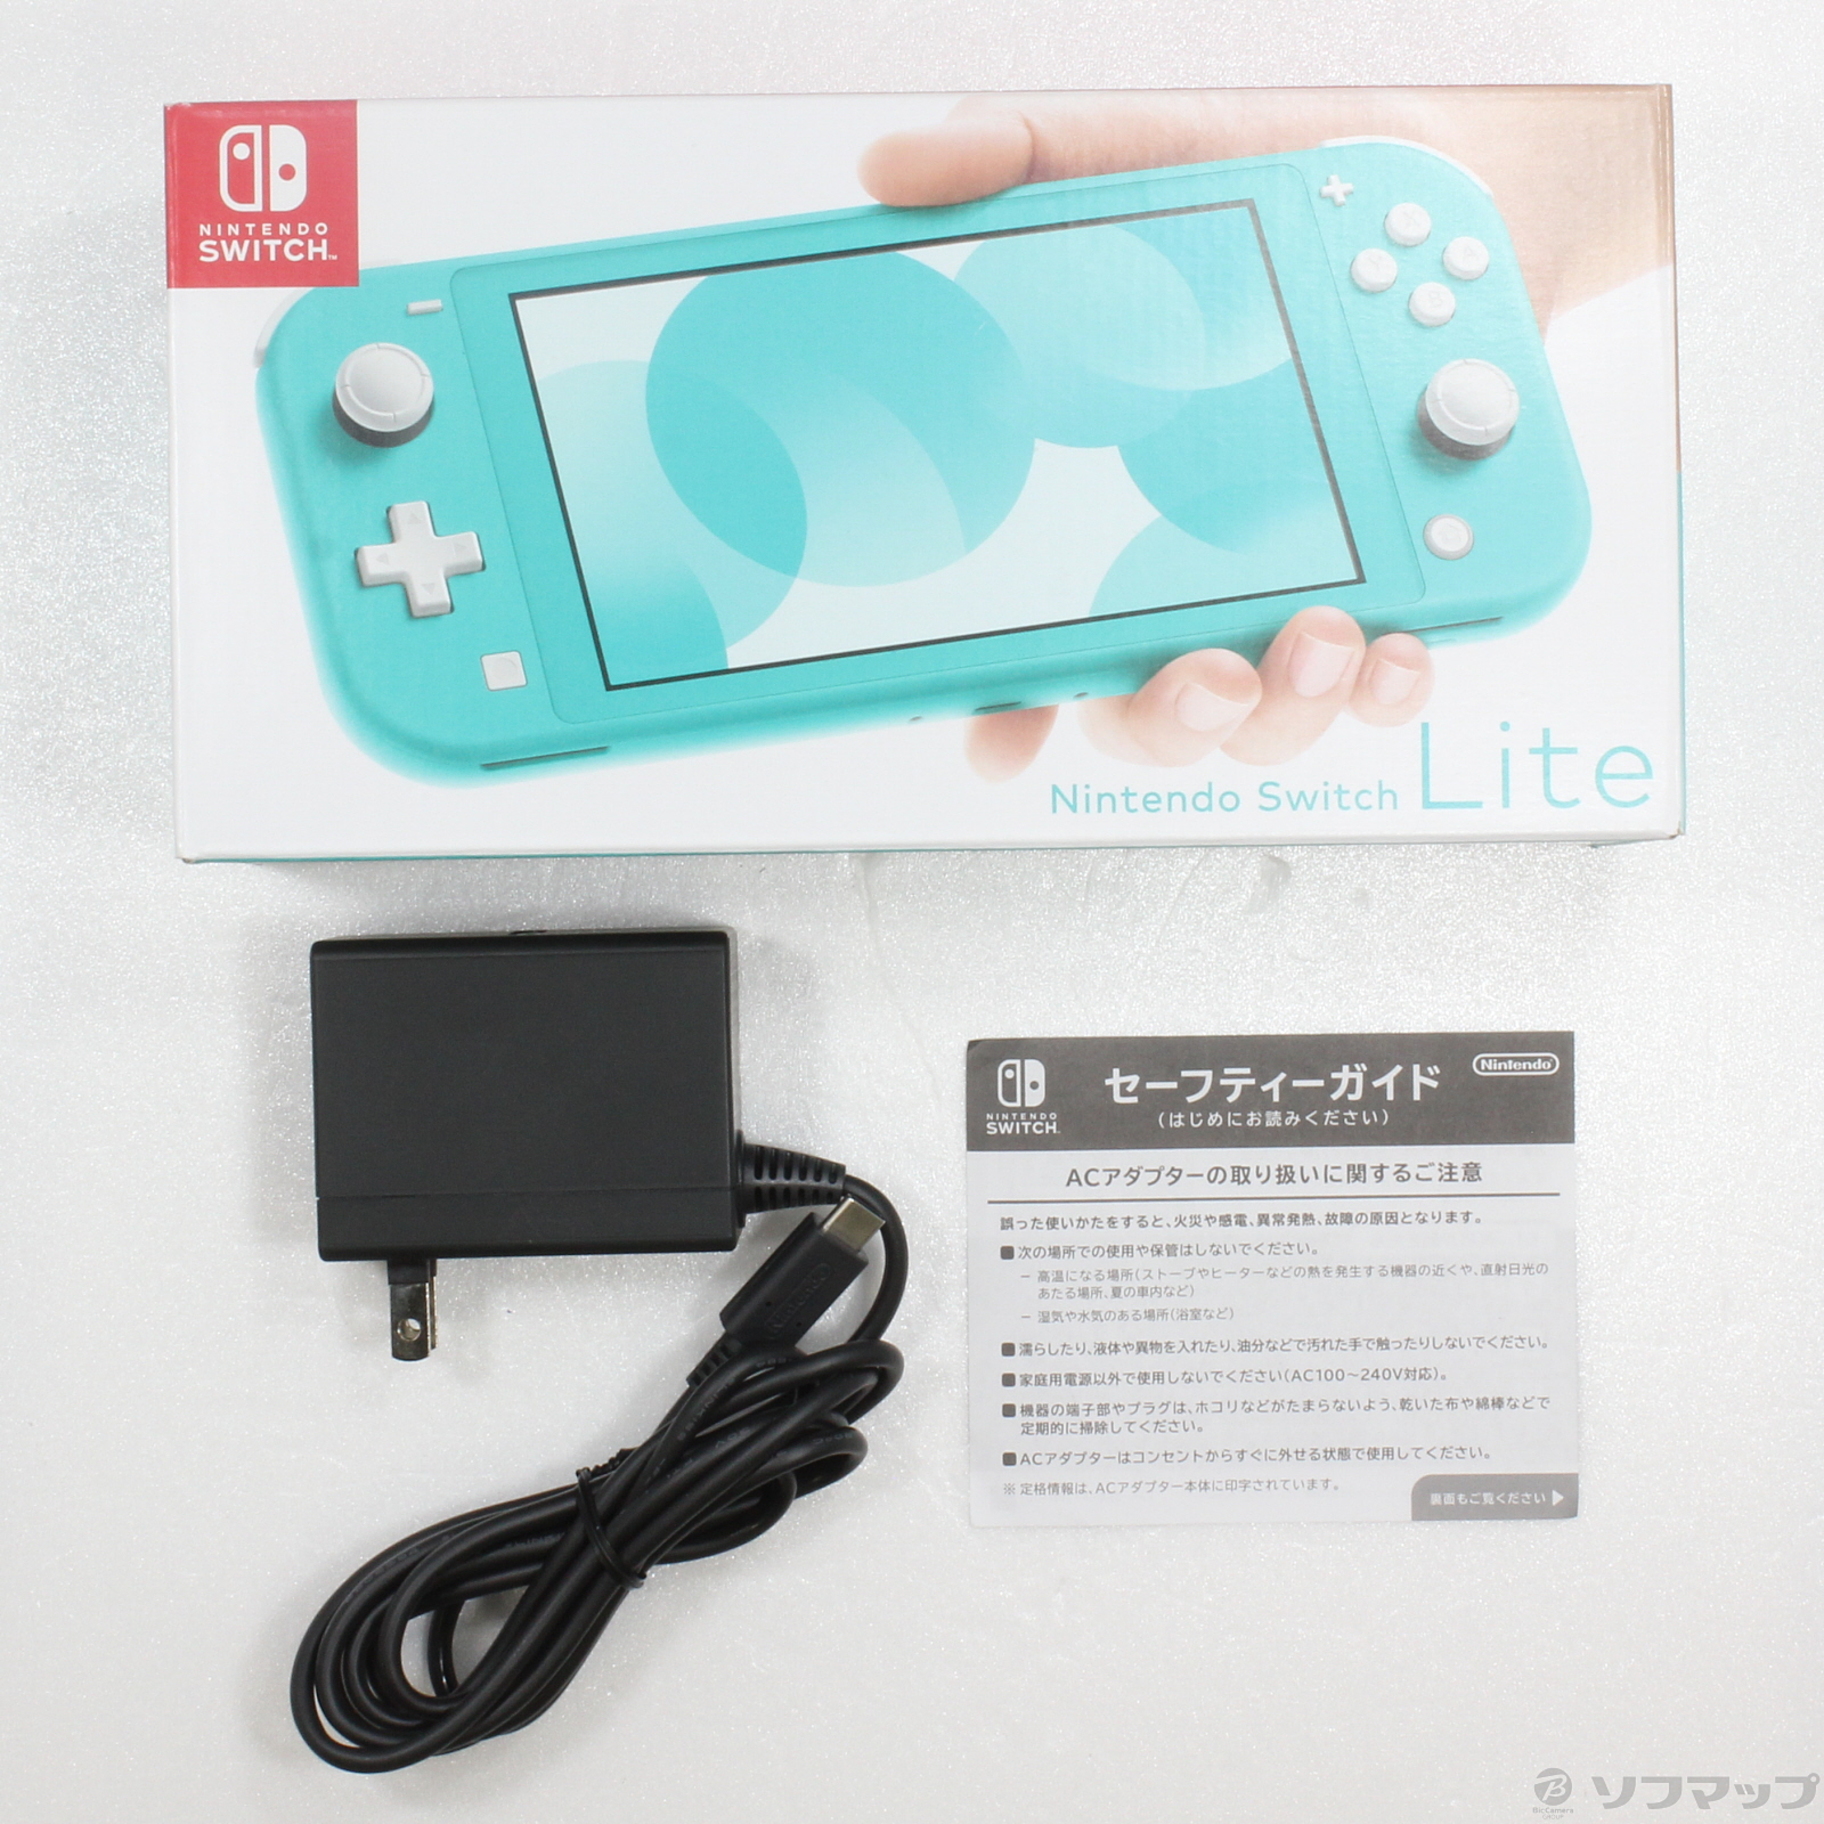 セール対象品 Nintendo Switch Lite ターコイズ ◇07/22(金)値下げ！